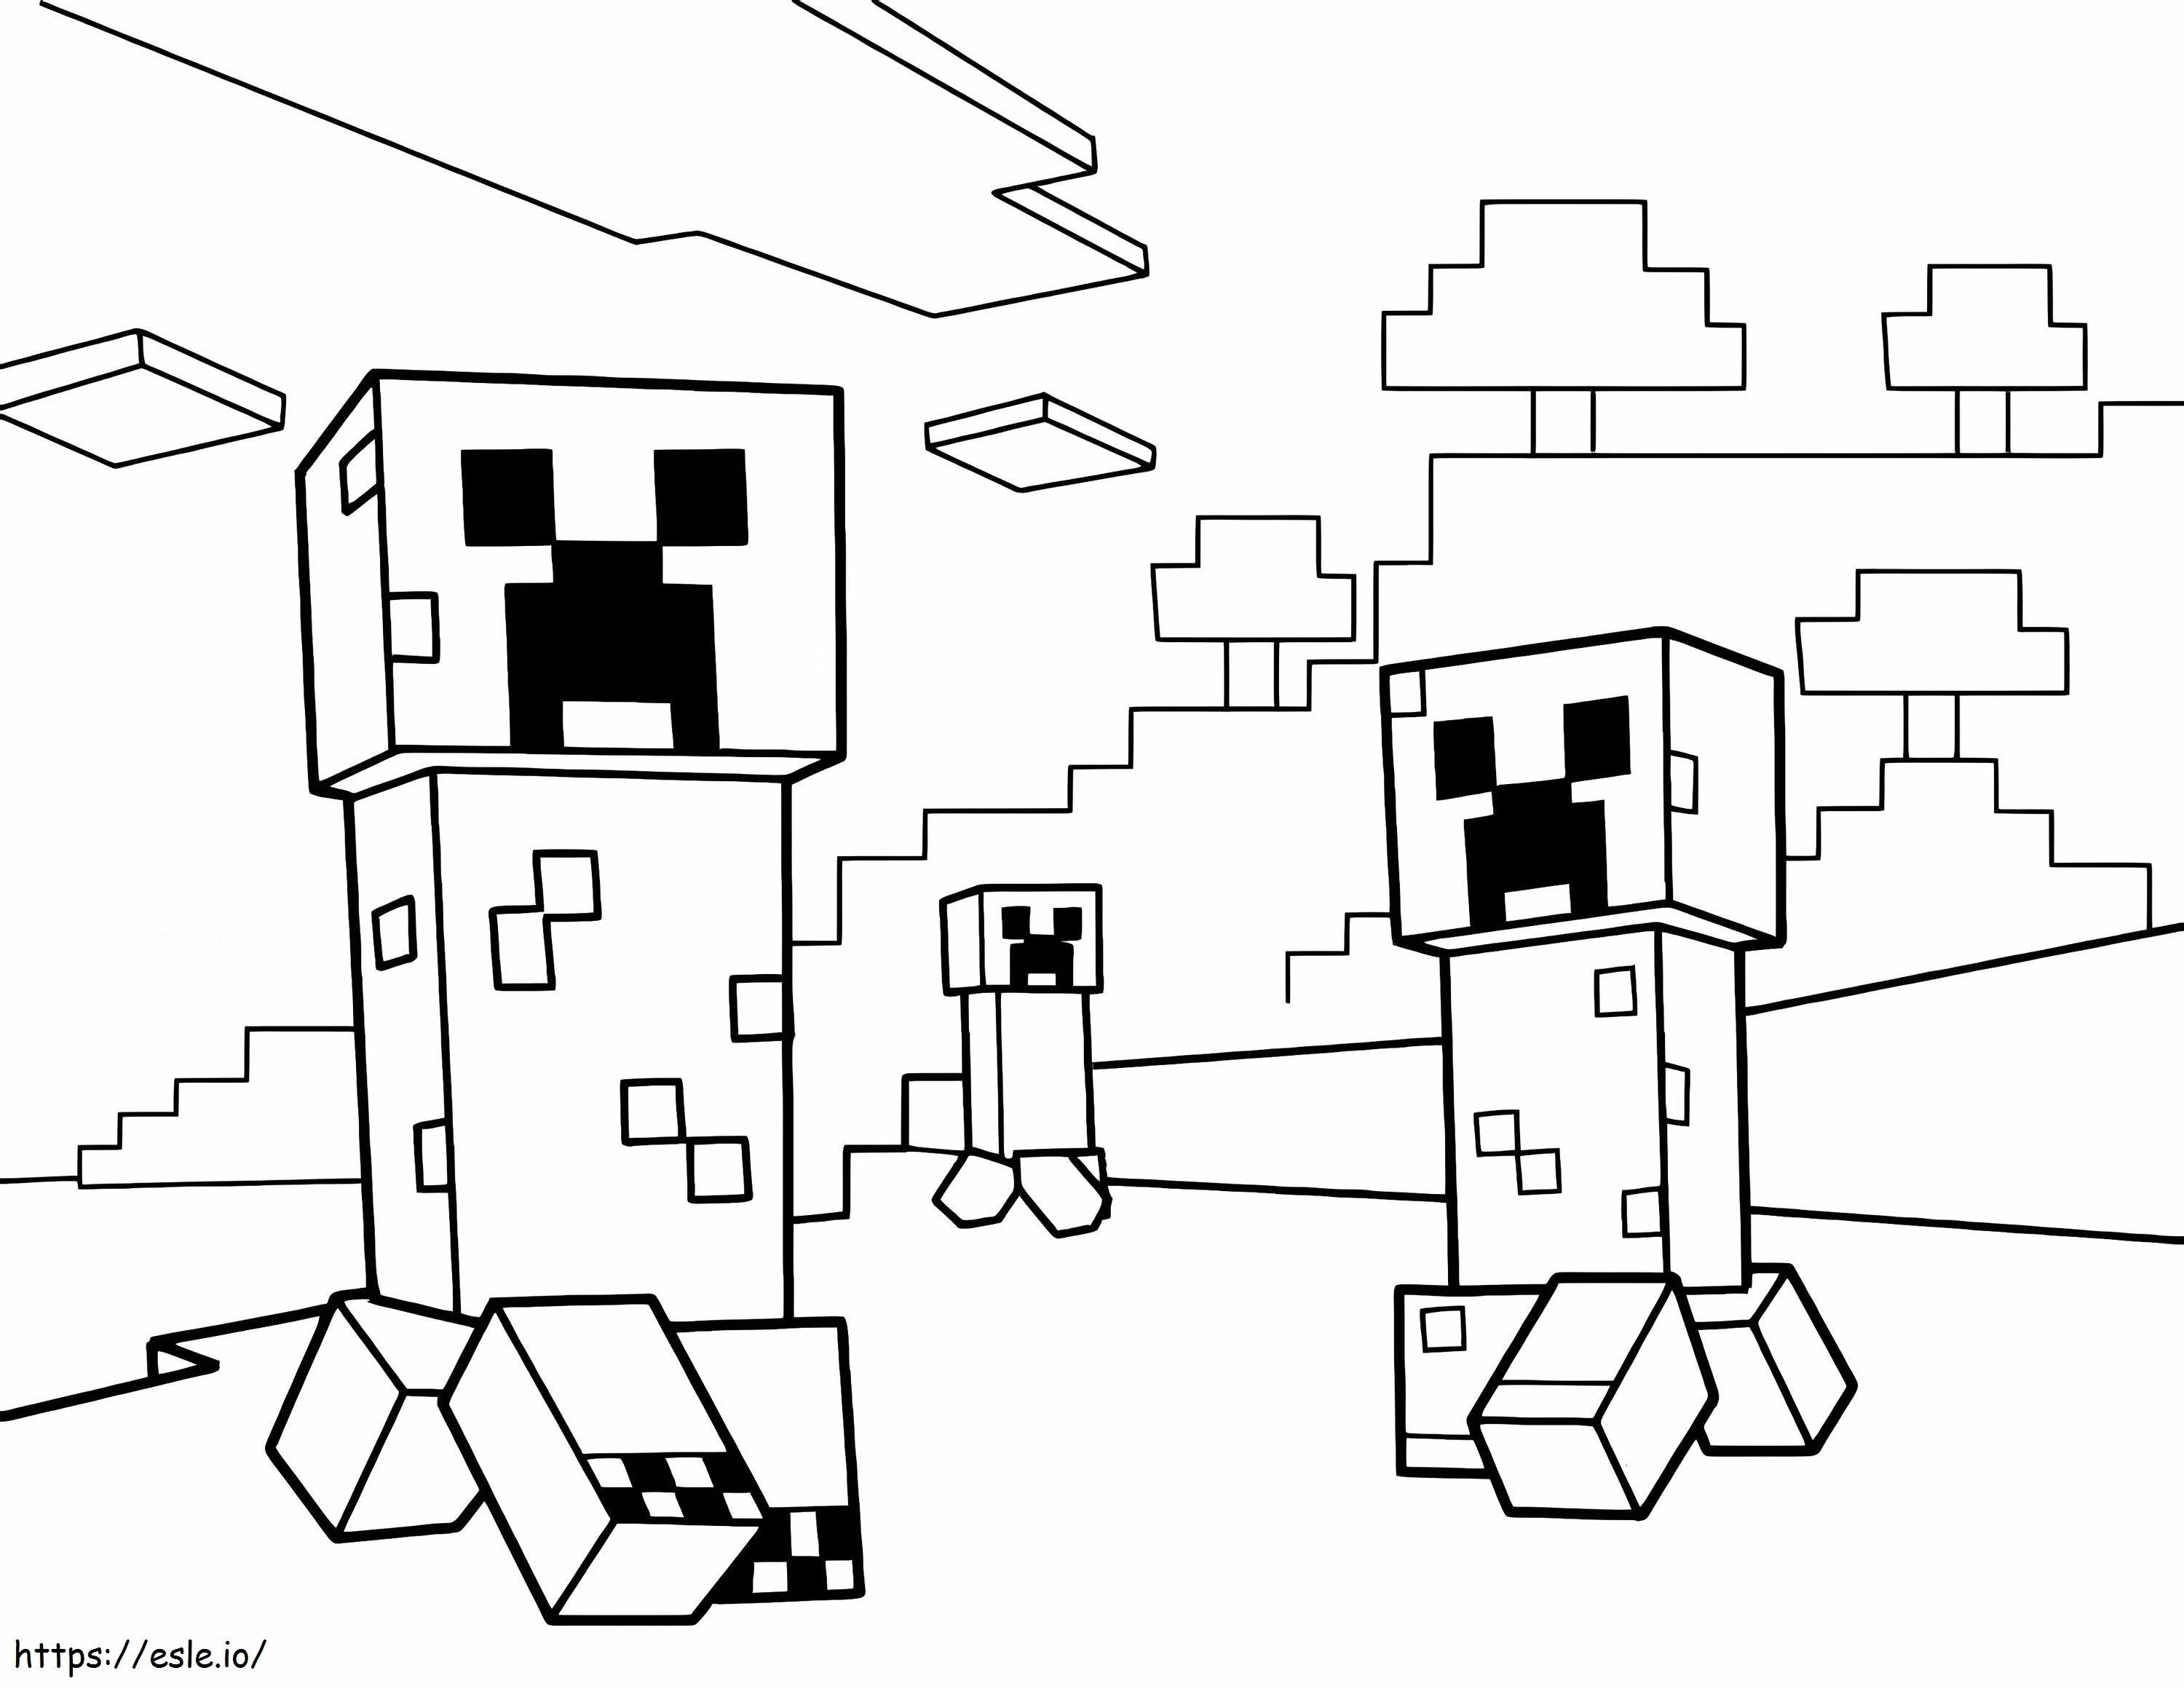 Üç Minecraft Sürüngeni boyama